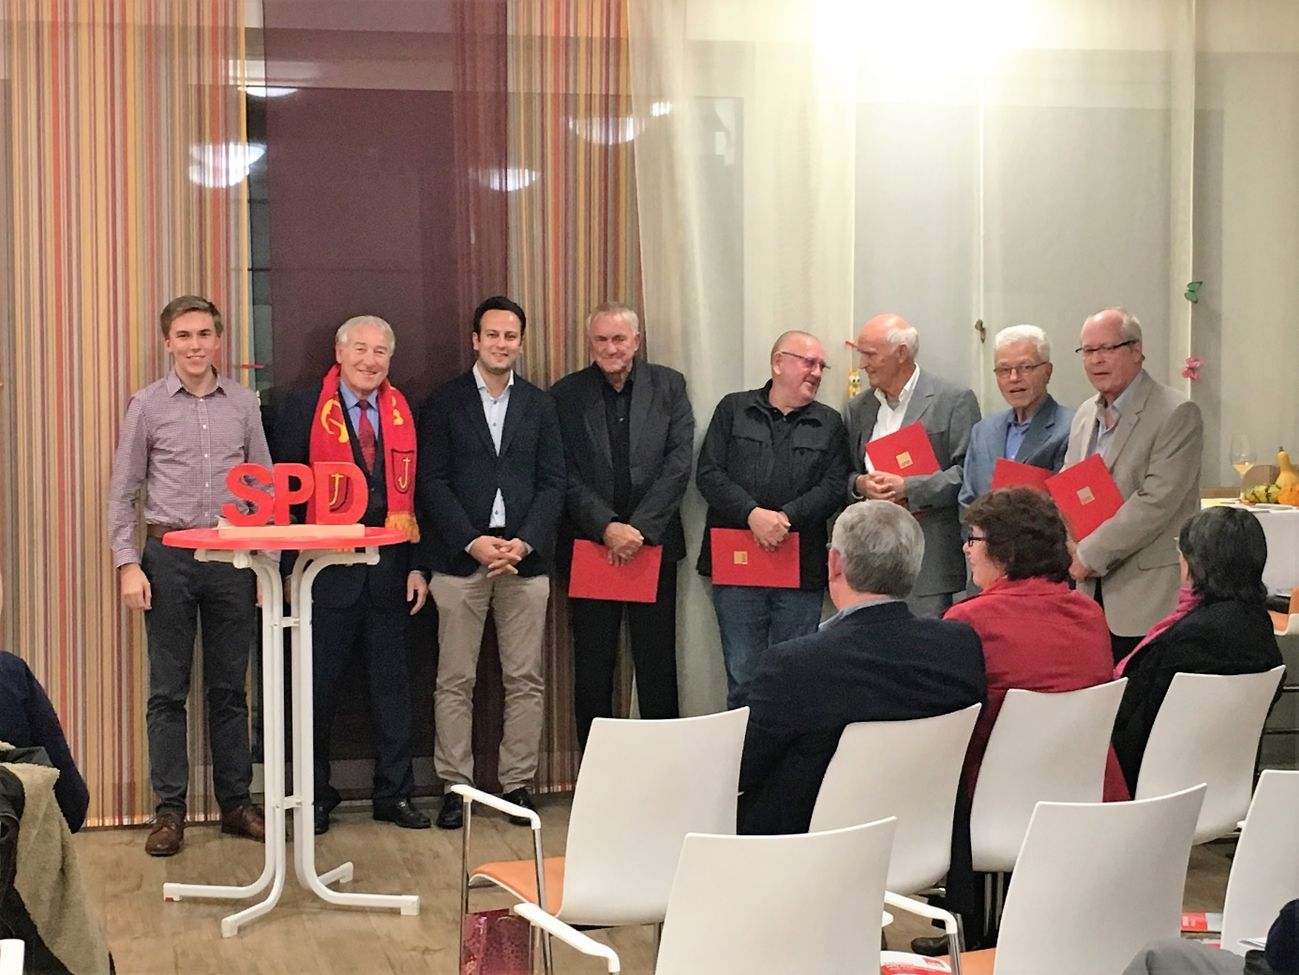 Namen von links: Tim Denecke, Reimund Horzel, Parsa Marvi, Siegfried Beer, Bernd Ploczitzka, Dieter Stoltz, Erich Schwall, Bernd Melchien